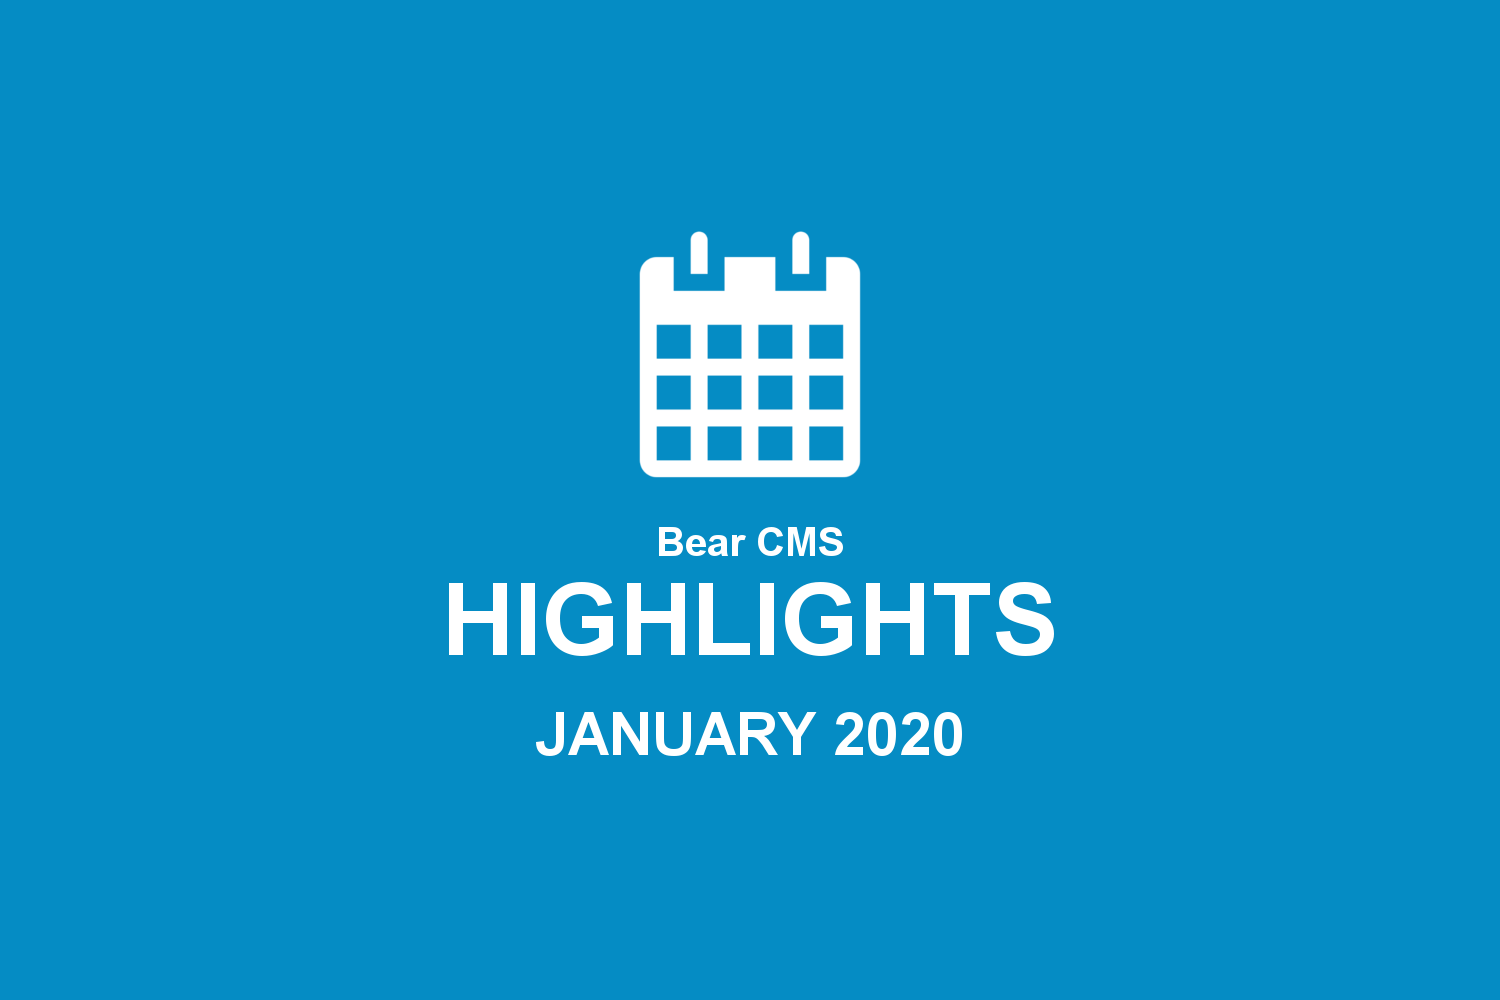 Bear CMS highlights (January 2020)